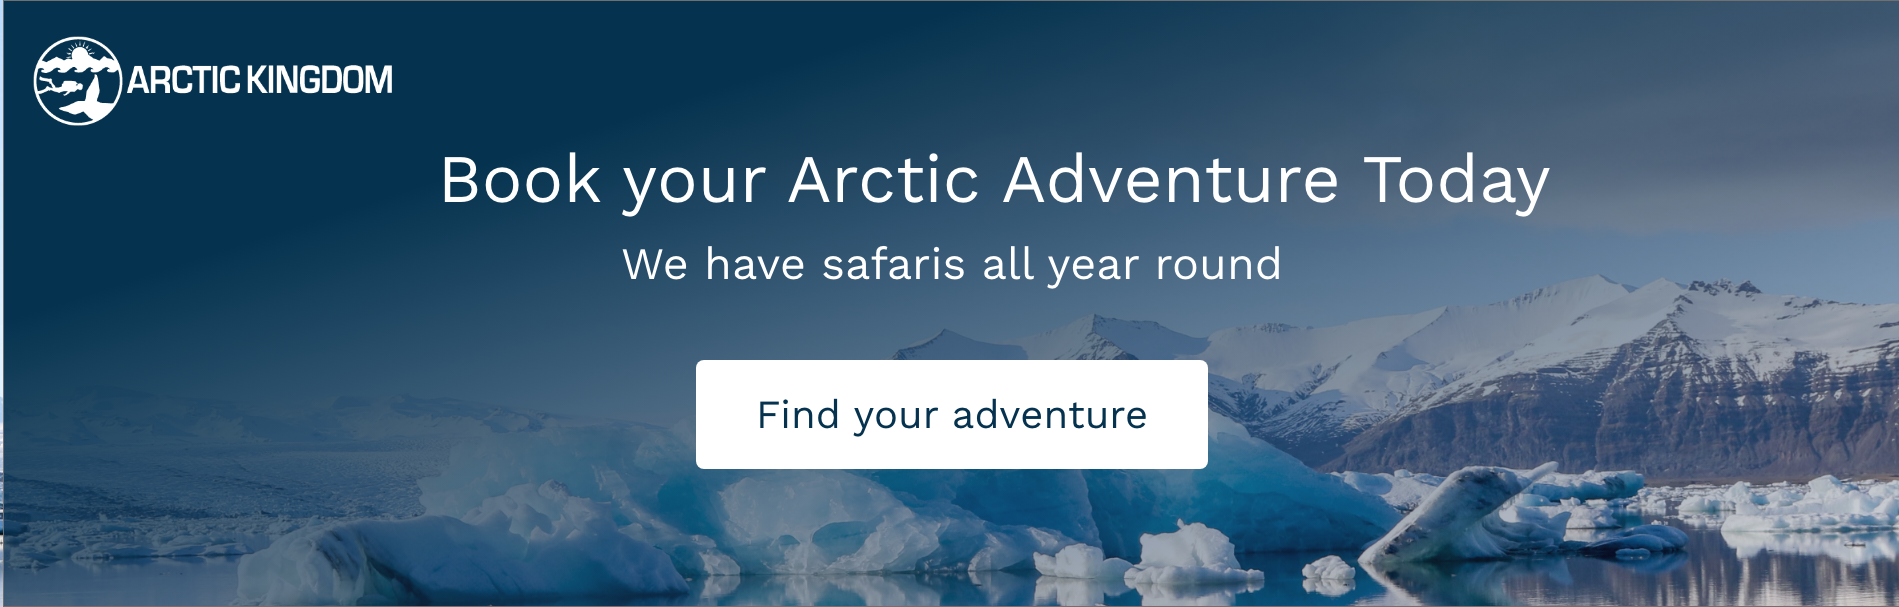 arctic adventures